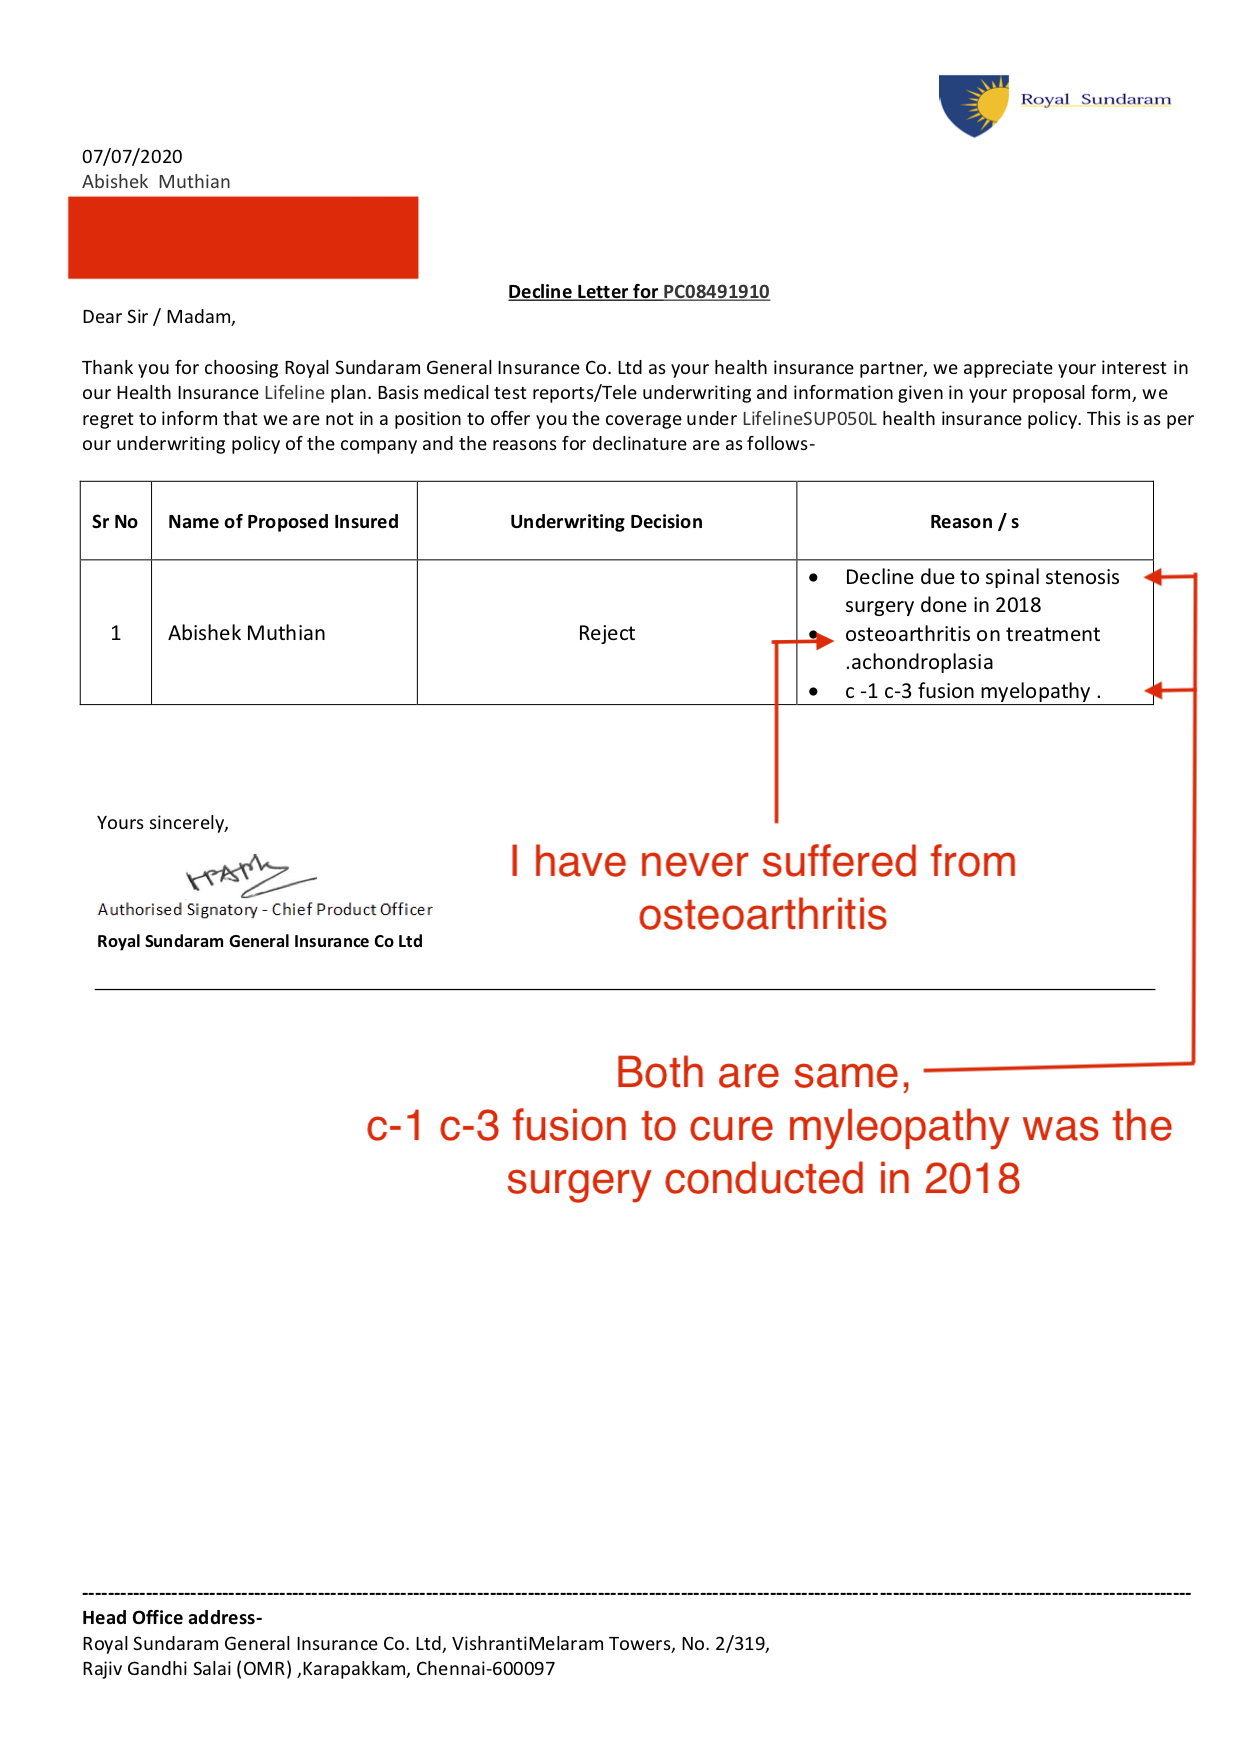 Royal Sundaram insurance decline letter for preexisting disease -1